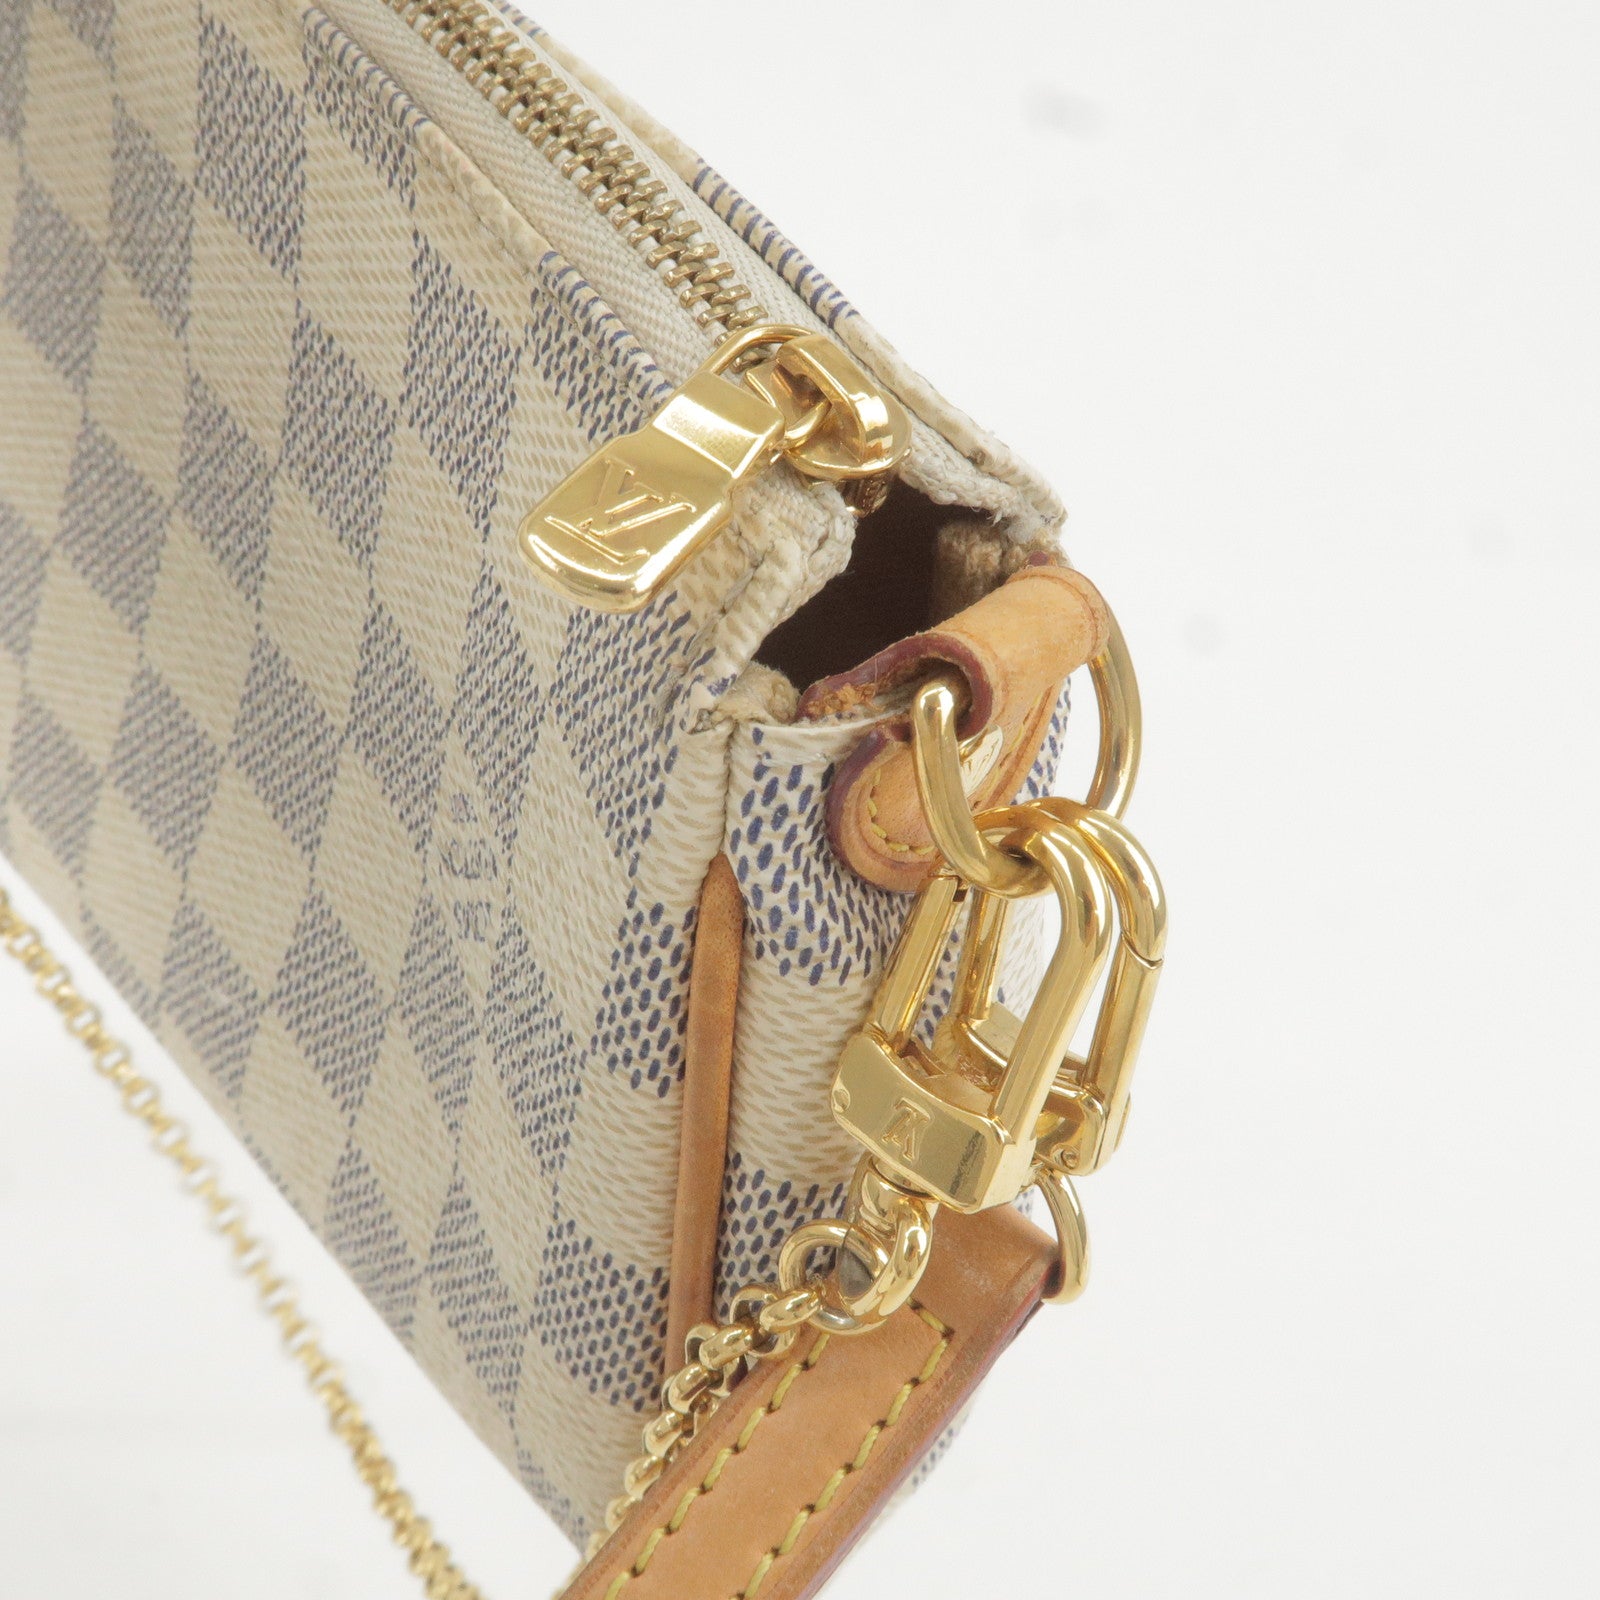 LOUIS VUITTON Louis Vuitton Damier Azur Eva N55214 Shoulder Bag